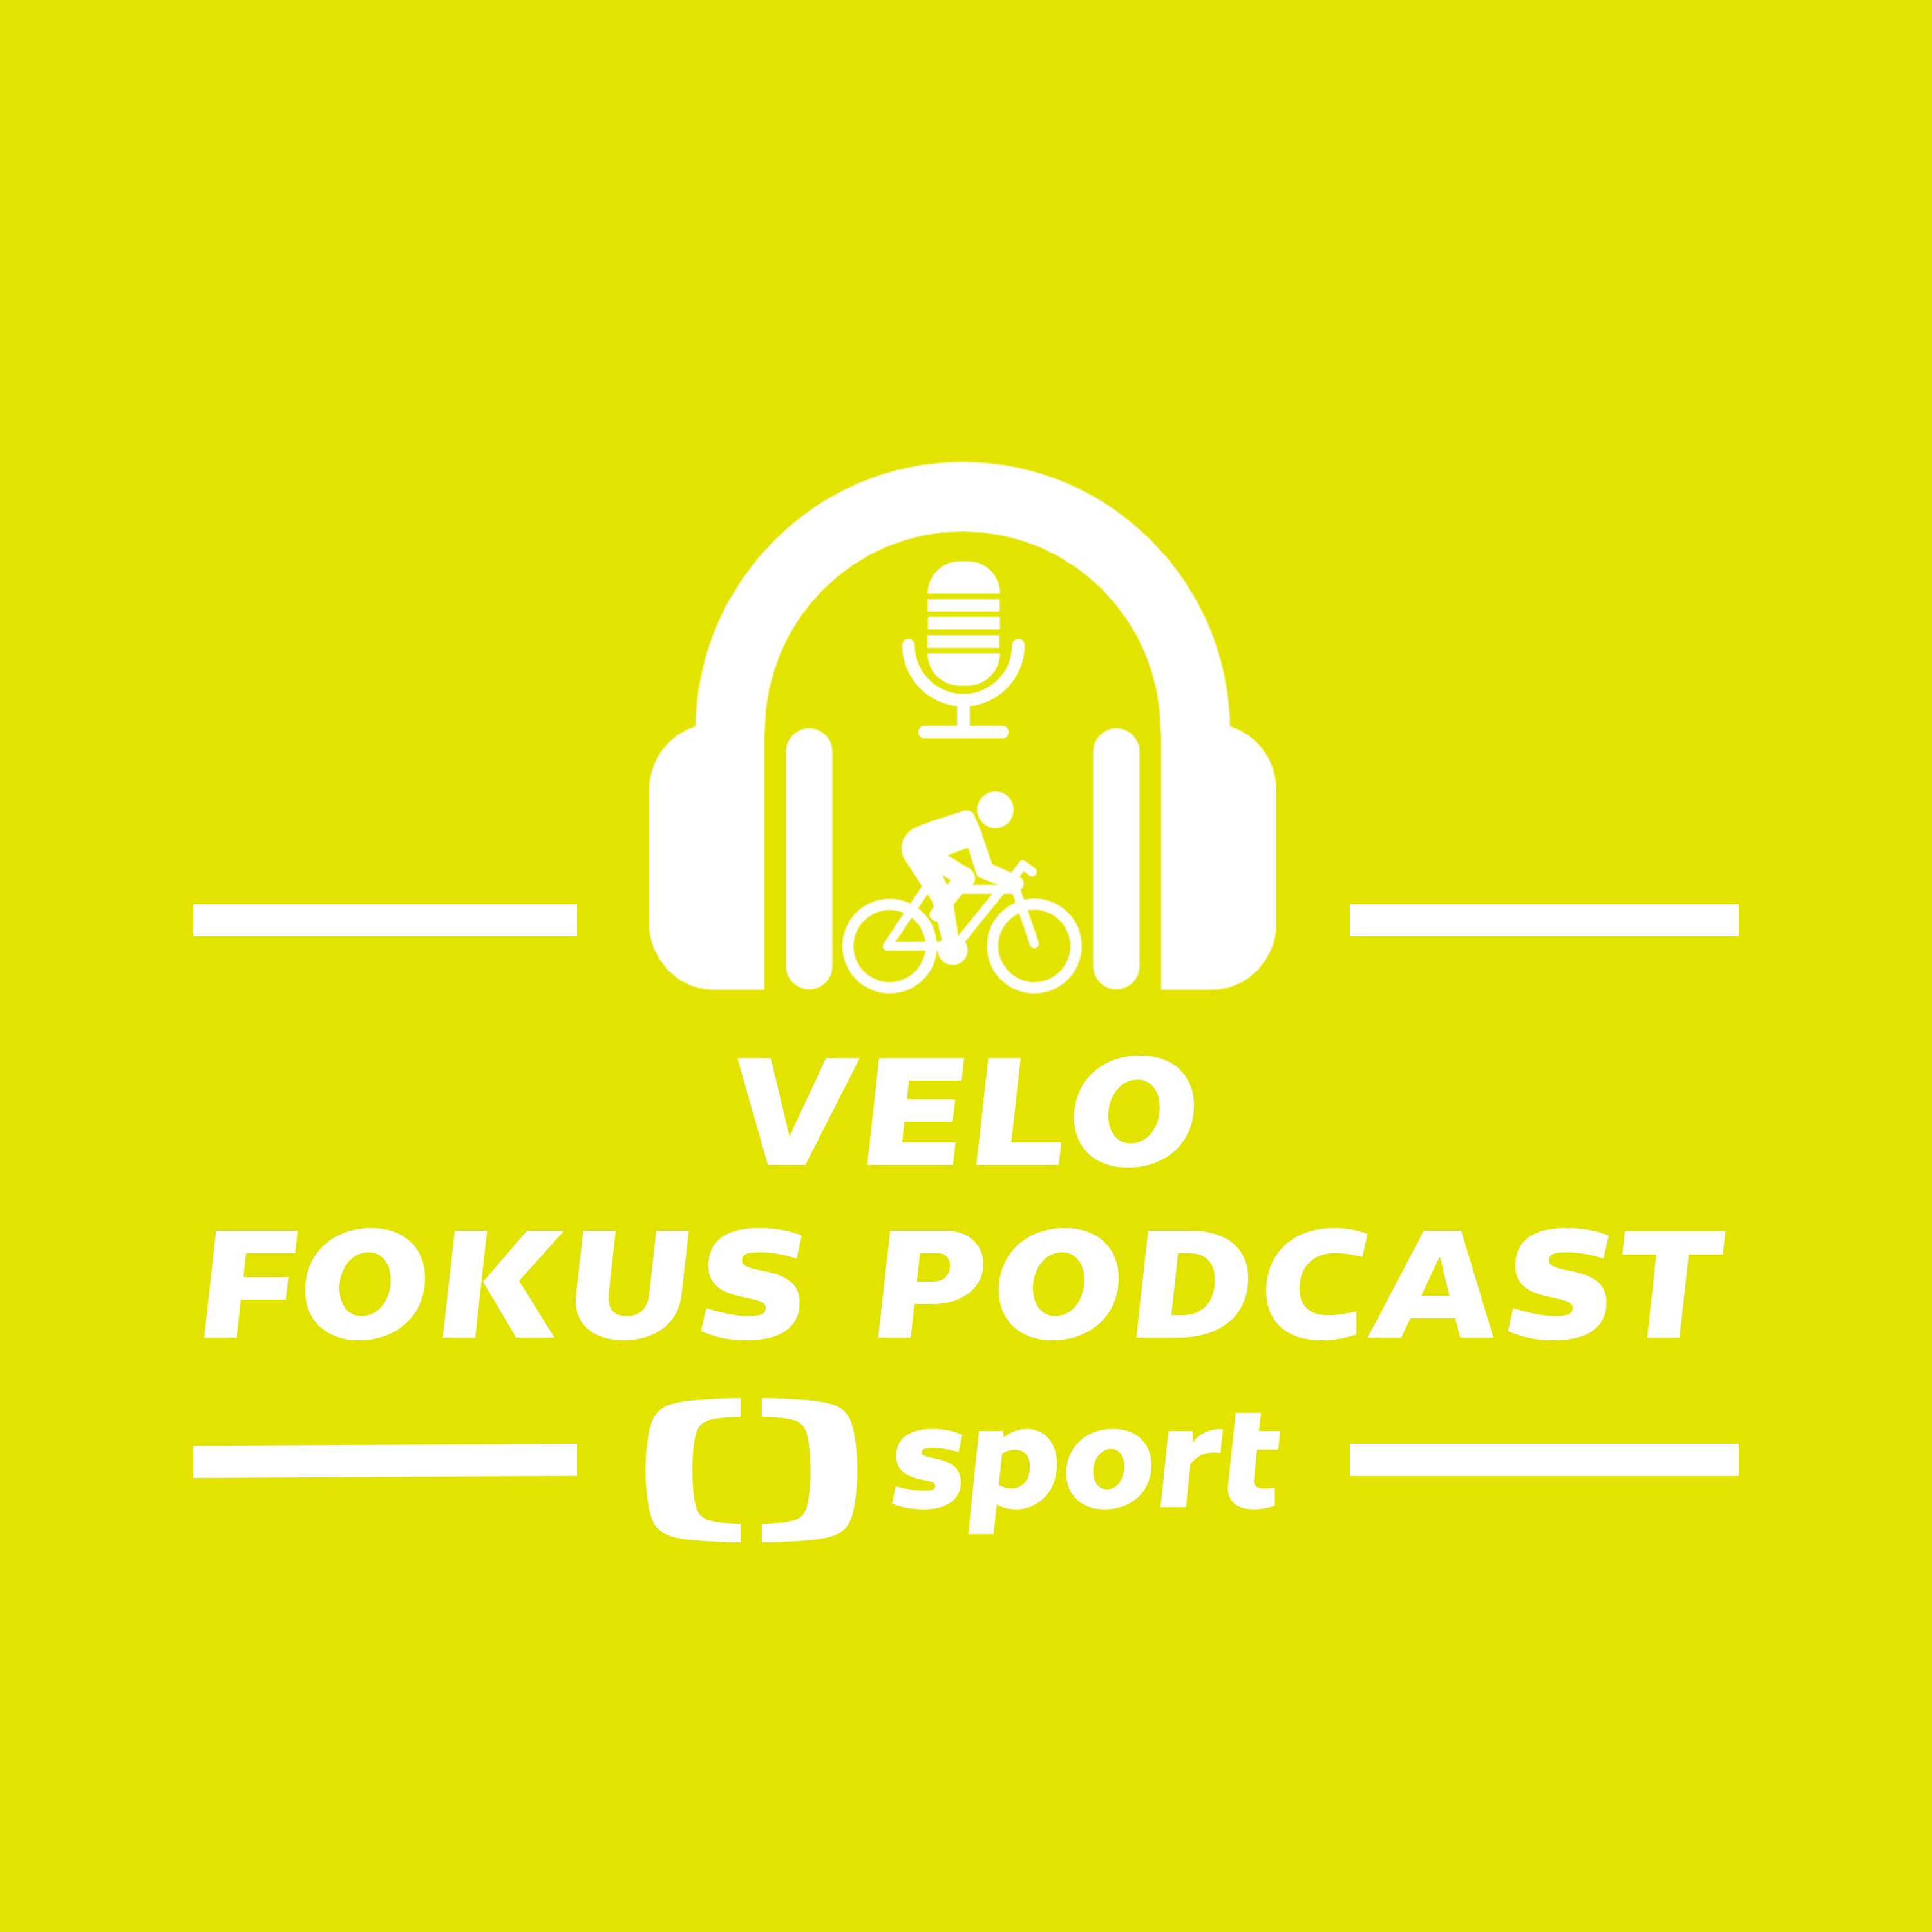 Velo fokus podcast: Jaká byla letošní Tour de France?